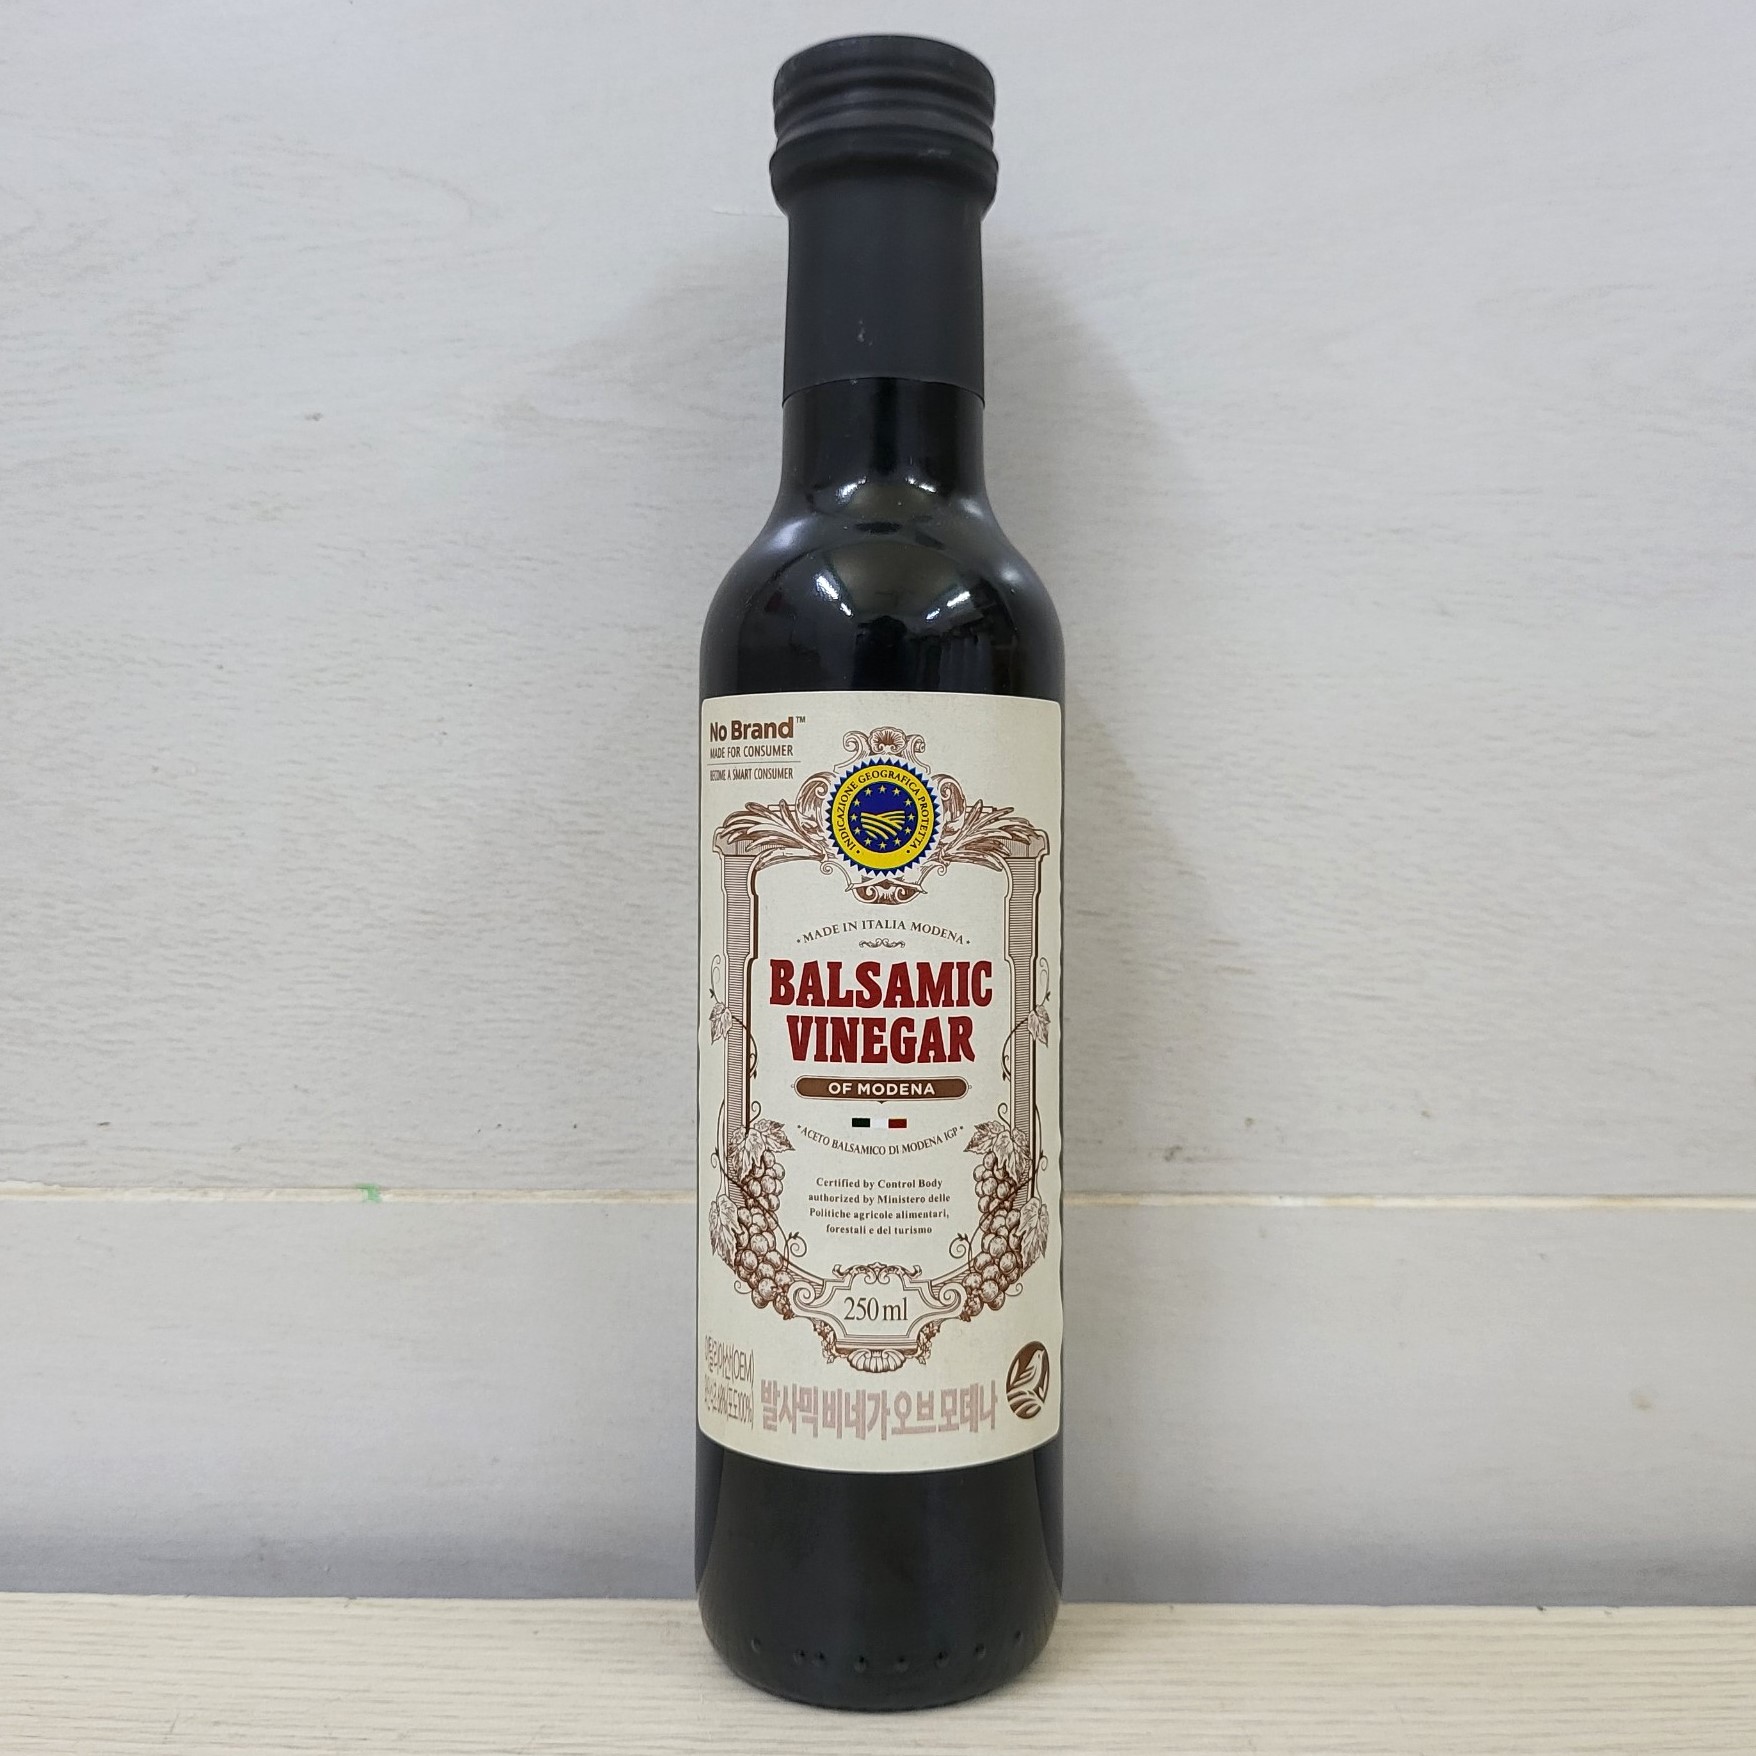 NO BRAND chai 250ml GIẤM NHO Balsamic Vinegar of Modena